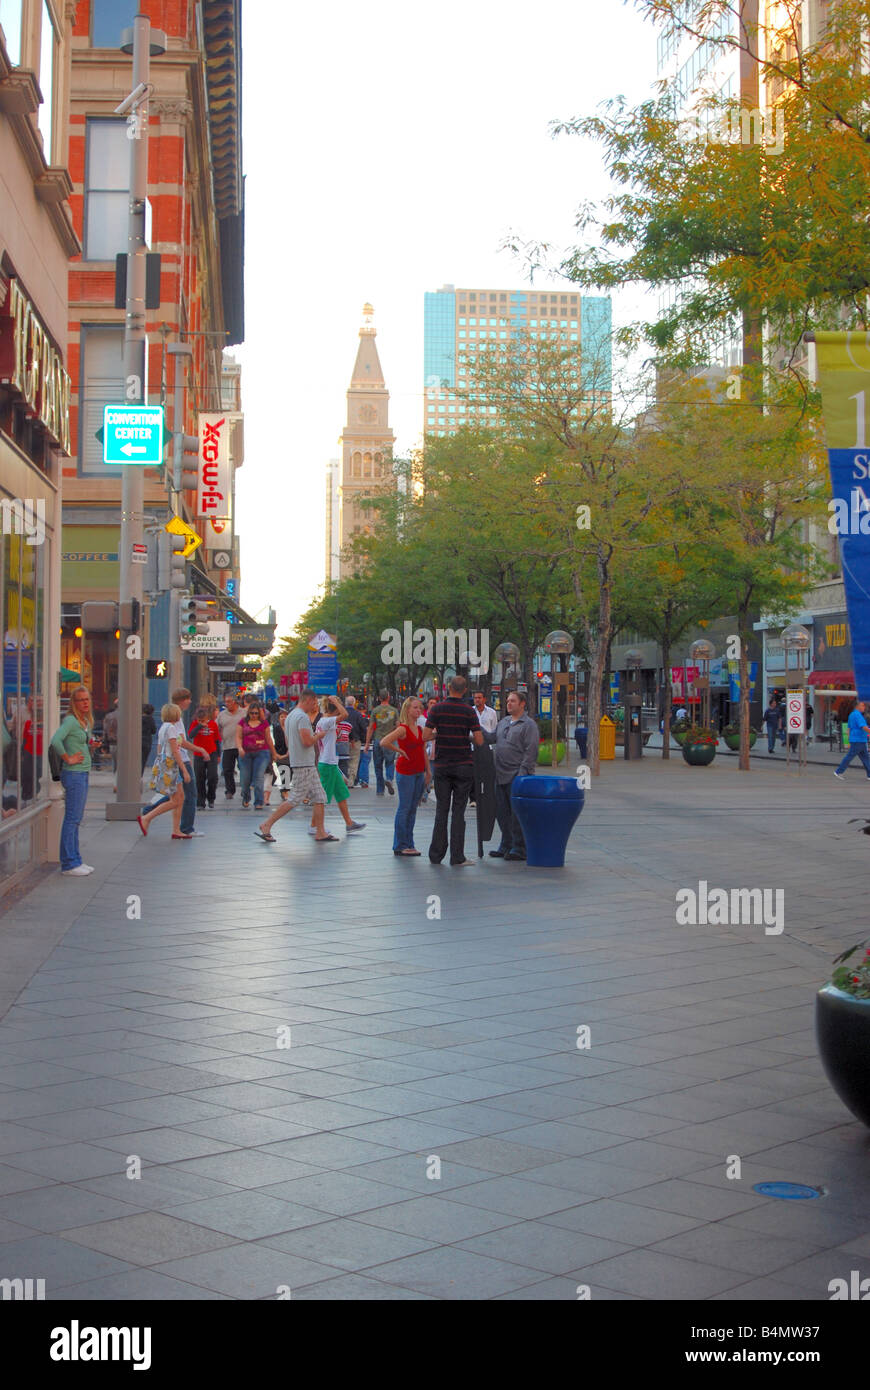 Beschäftigt Straßenszene in einer amerikanischen Großstadt Stockfoto